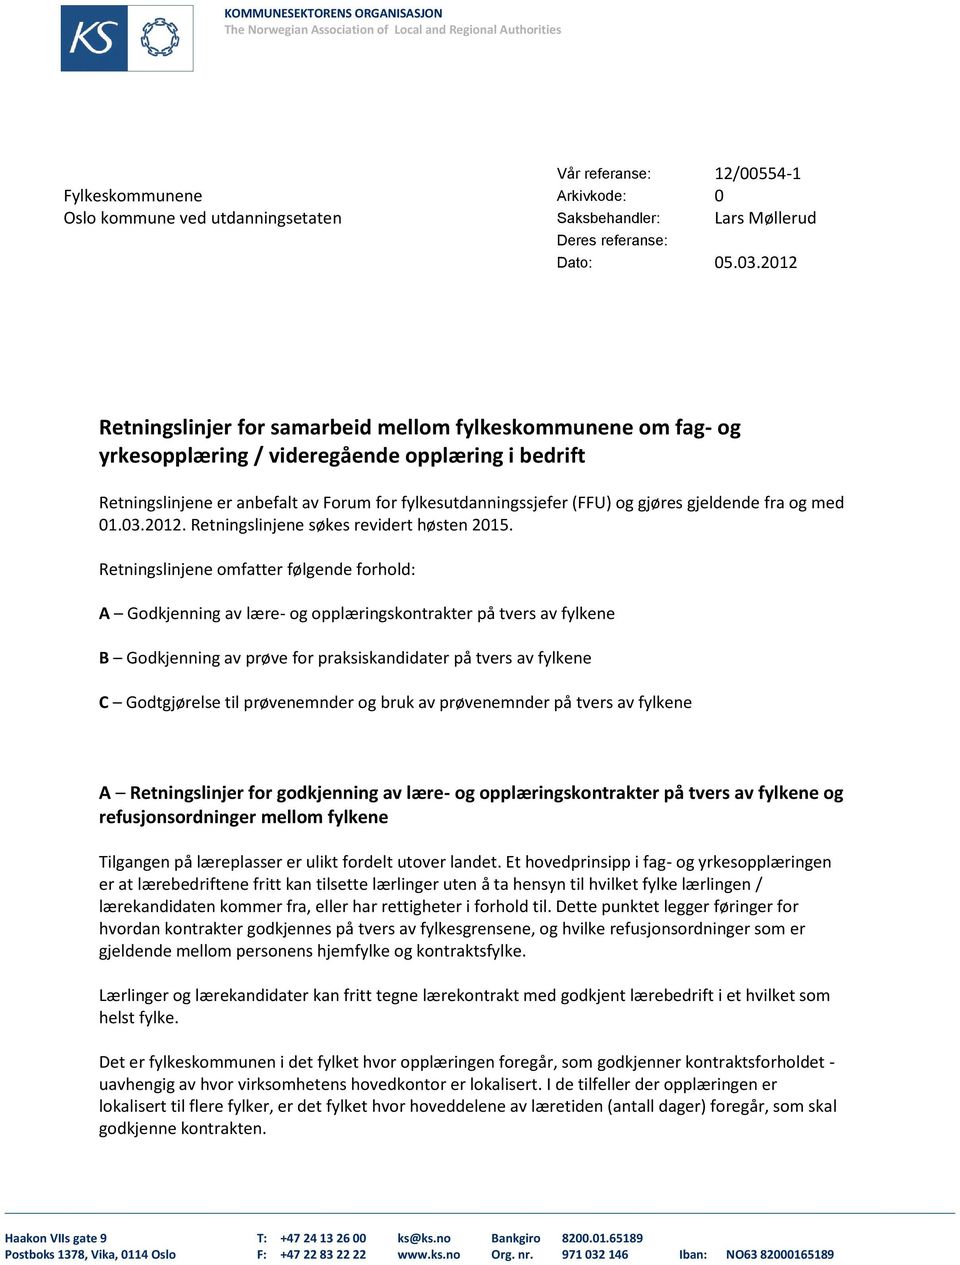 2012 Retningslinjer for samarbeid mellom fylkeskommunene om fag- og yrkesopplæring / videregående opplæring i bedrift Retningslinjene er anbefalt av Forum for fylkesutdanningssjefer (FFU) og gjøres